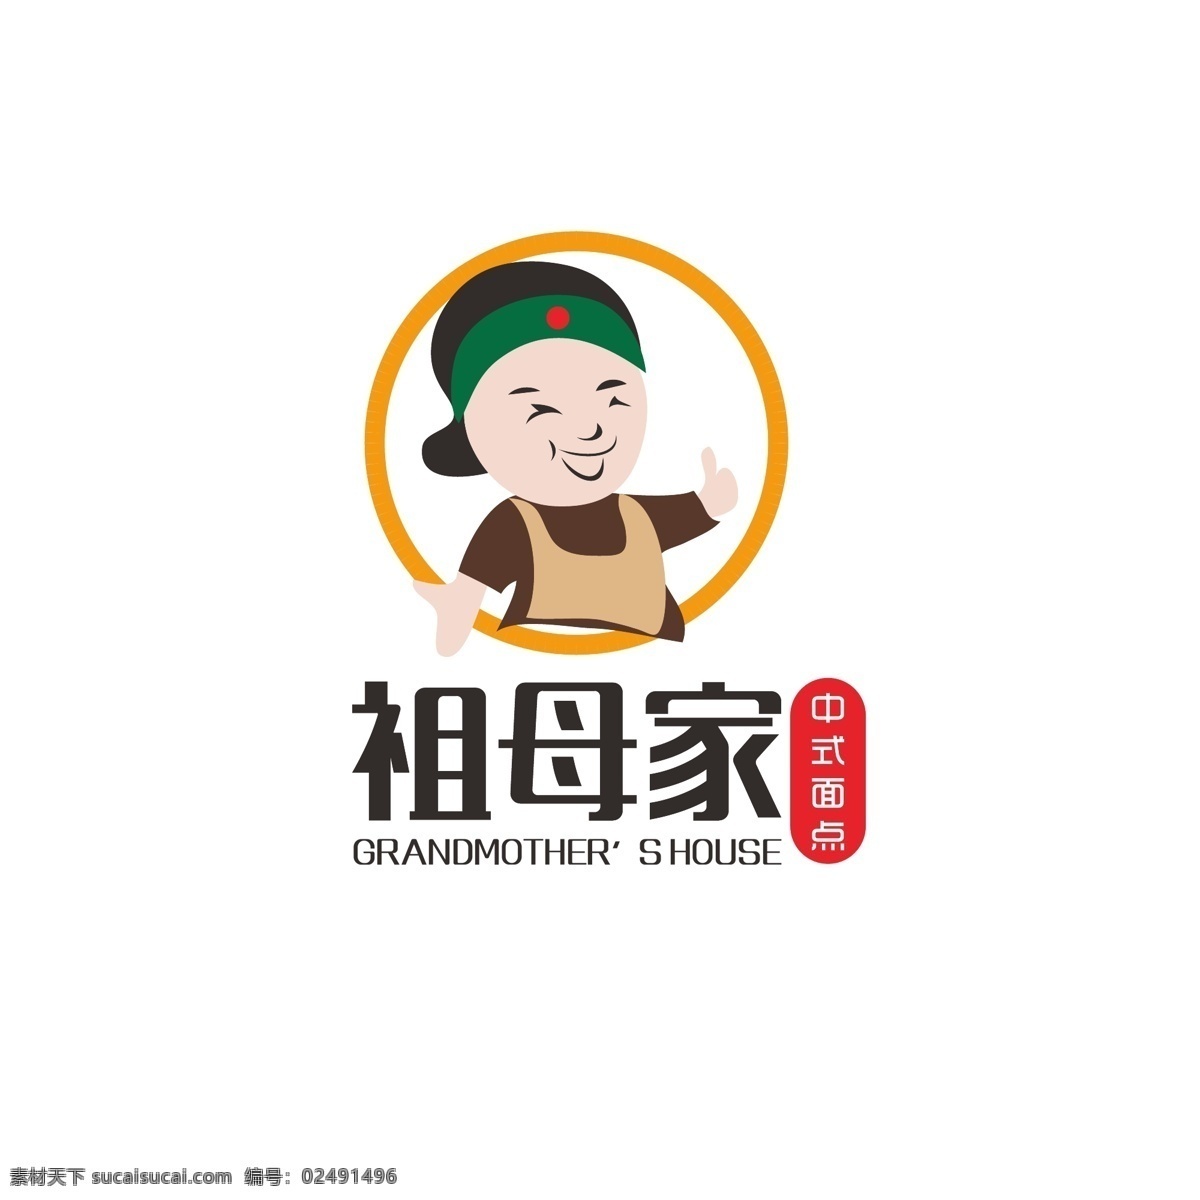 中式 面点 logo 简约 传统 饮食 餐饮 老太太 老太婆 祖母